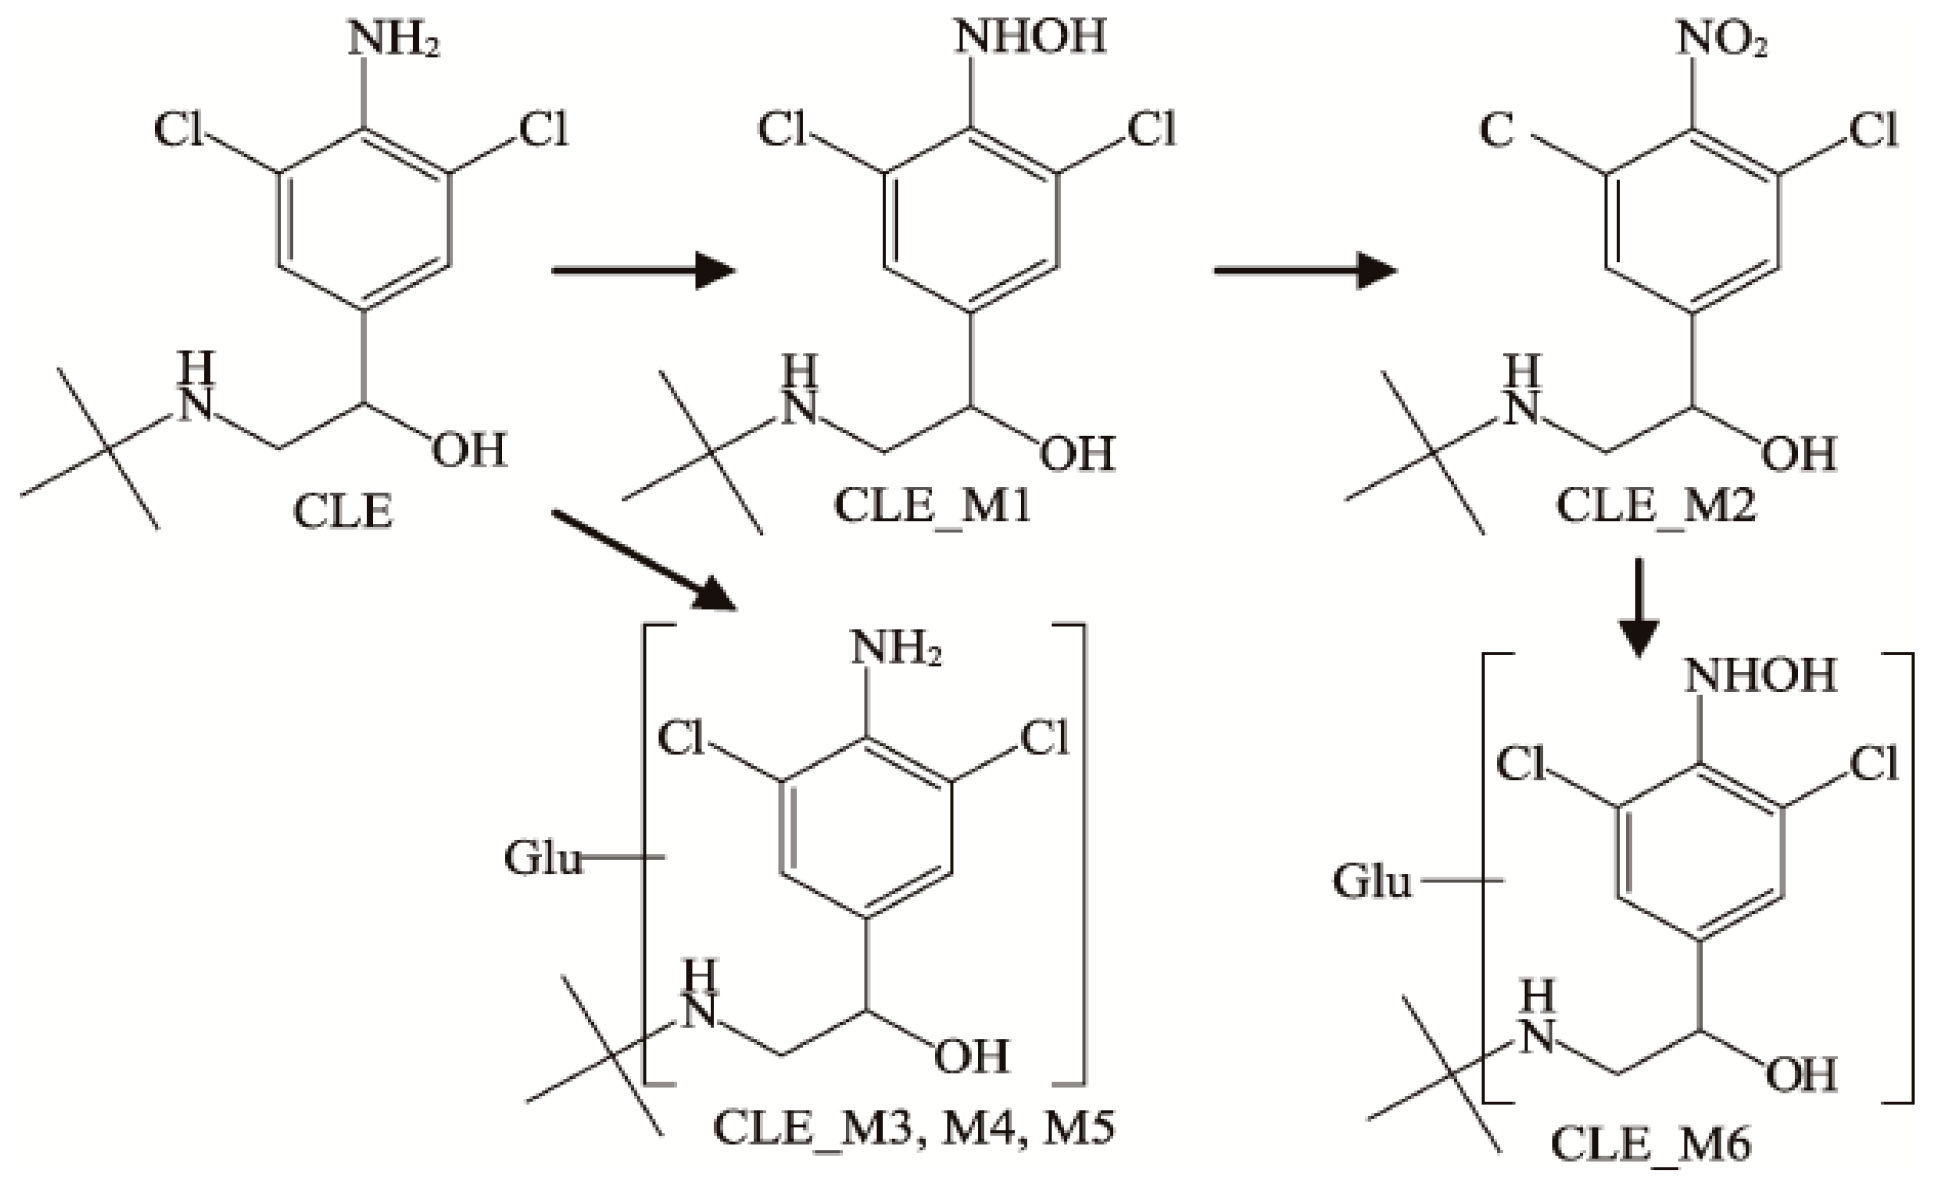 Metabolic Pathways of 2-Phenoxyethanol in Rats